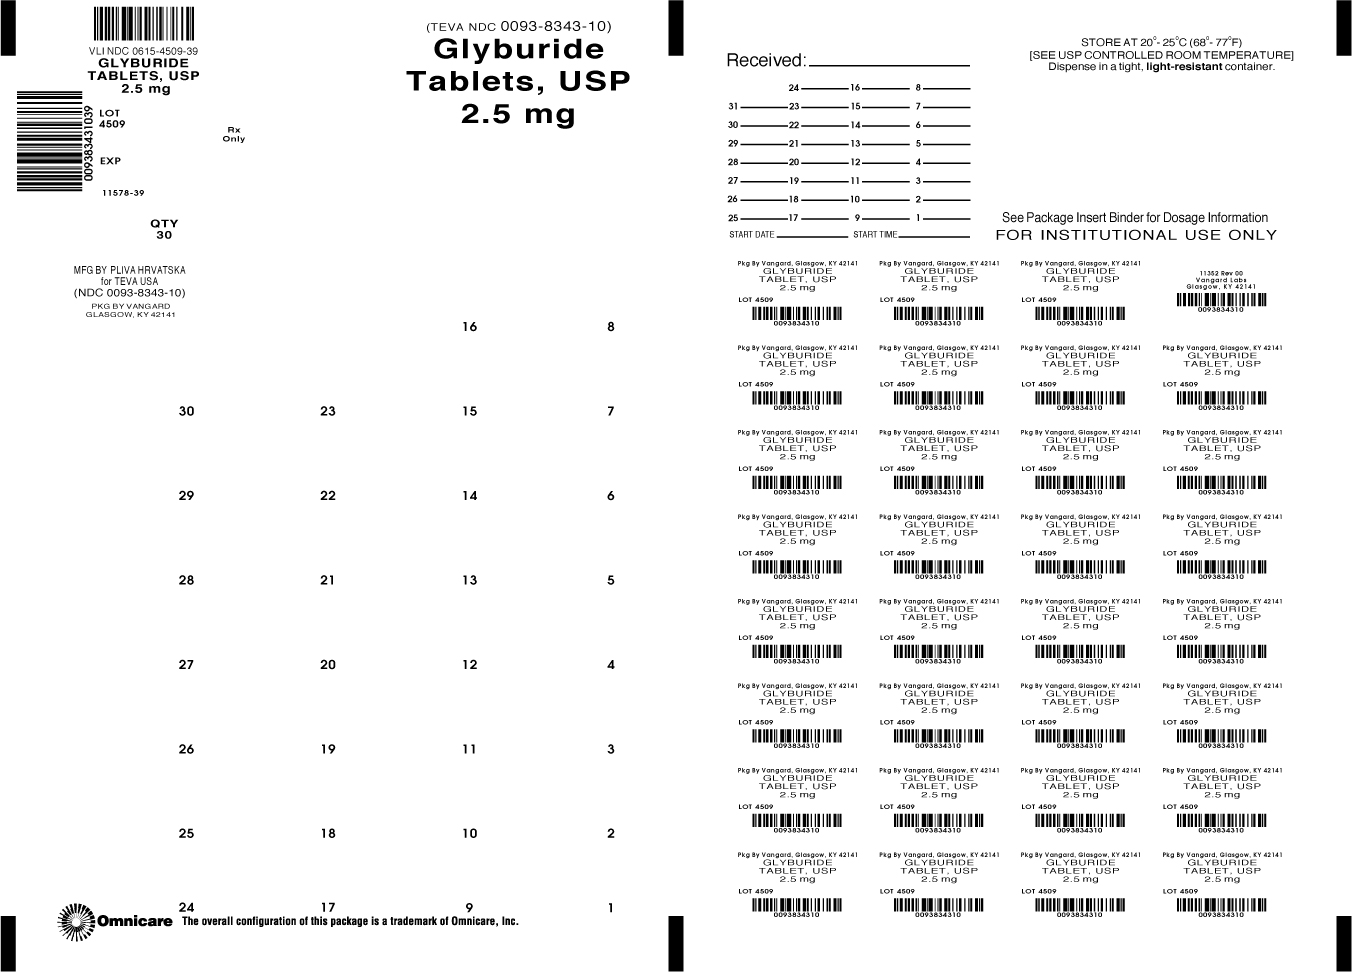 Principal Display Panel- Glyburide Tablets, USP 2.5 mg